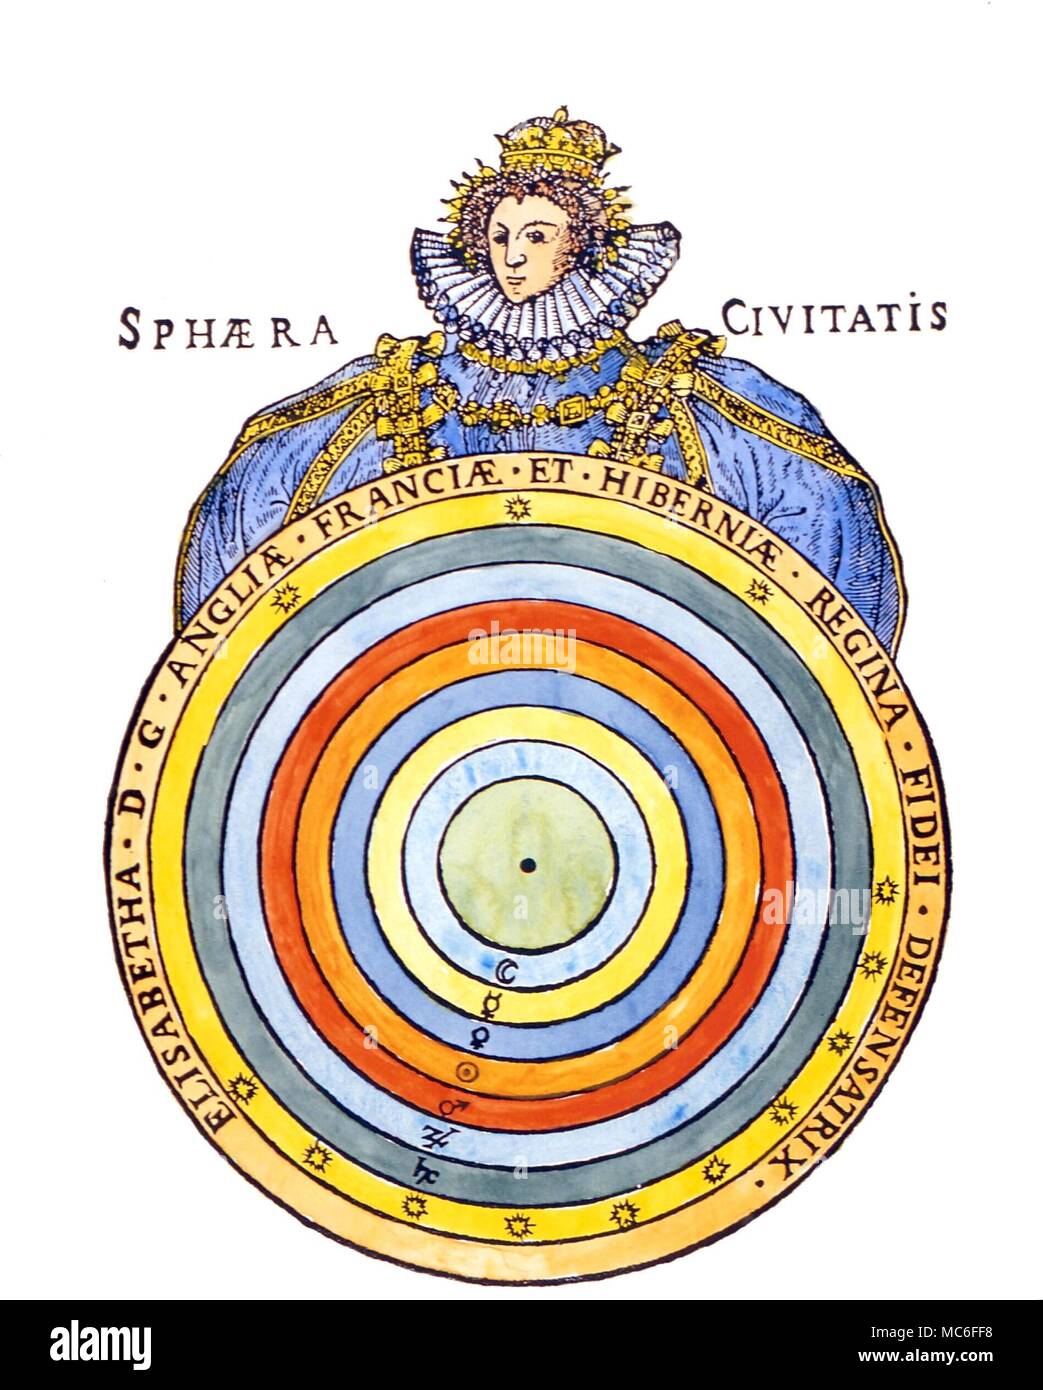 Planeten die Sphären der Planeten, entsprechend der mittelalterlichen pre-Kopernikanische System. Die Kugeln werden als unter dem Schutz der Königin Elizabeth I. Anfang des 17. Jahrhunderts Holz drucken Stockfoto